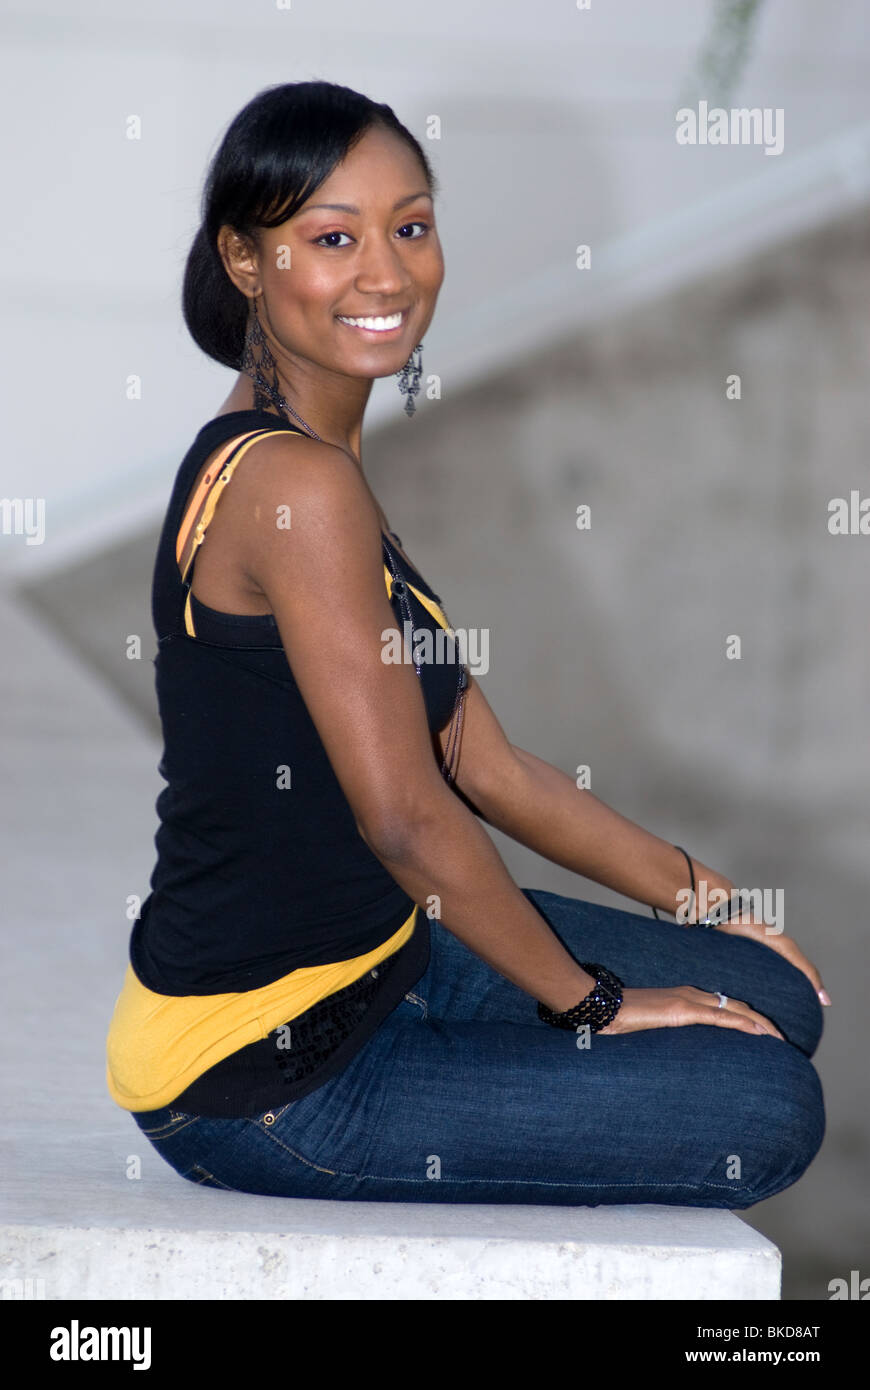 Un joven americano africano adulto hembra está sentado en un muro de hormigón sonriendo Foto de stock